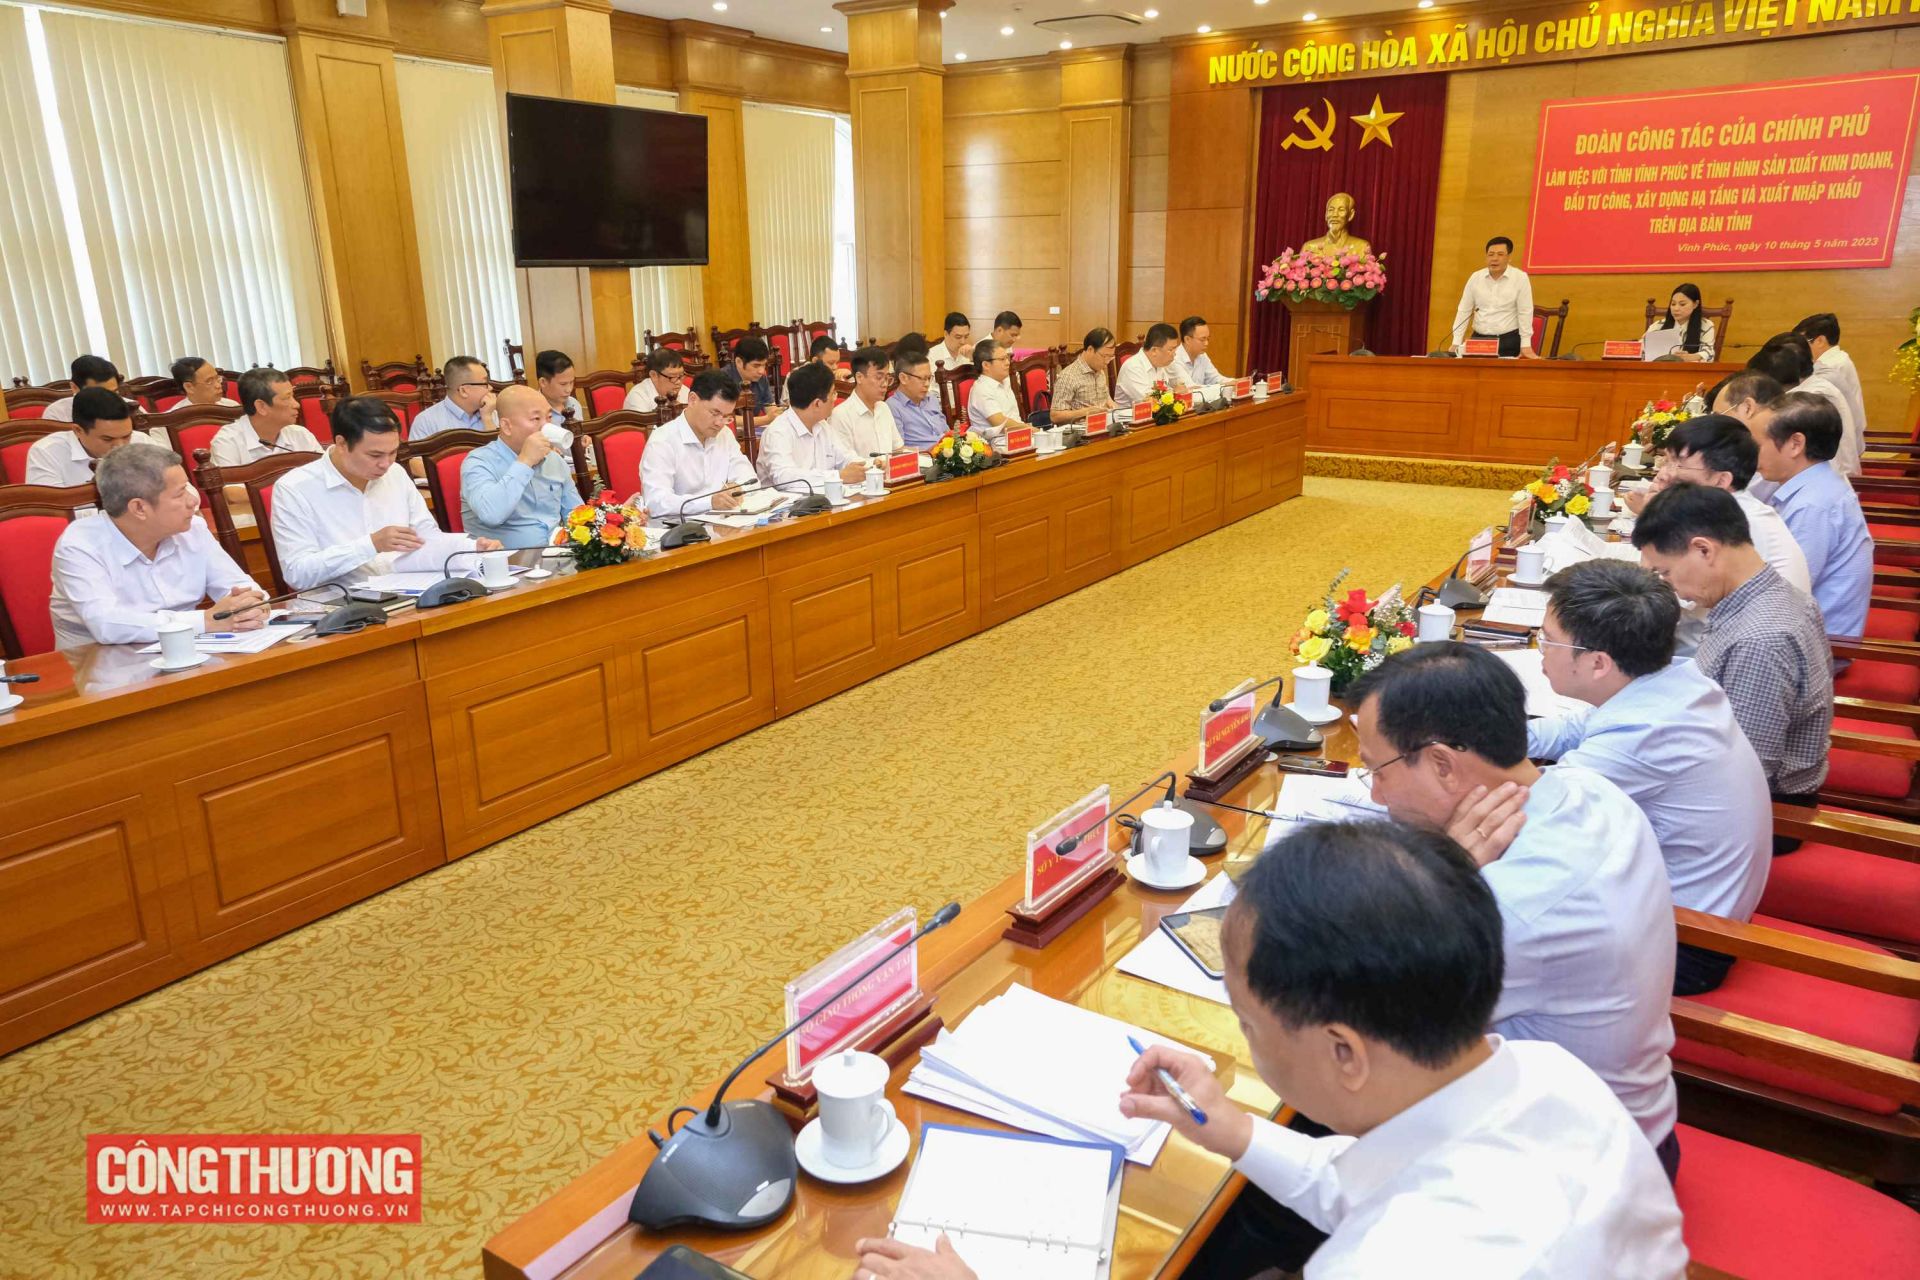 Bộ trưởng Nguyễn Hồng Diên chủ trì buổi làm việc của đoàn công tác Chính phủ với lãnh đạo tỉnh Vĩnh Phúc